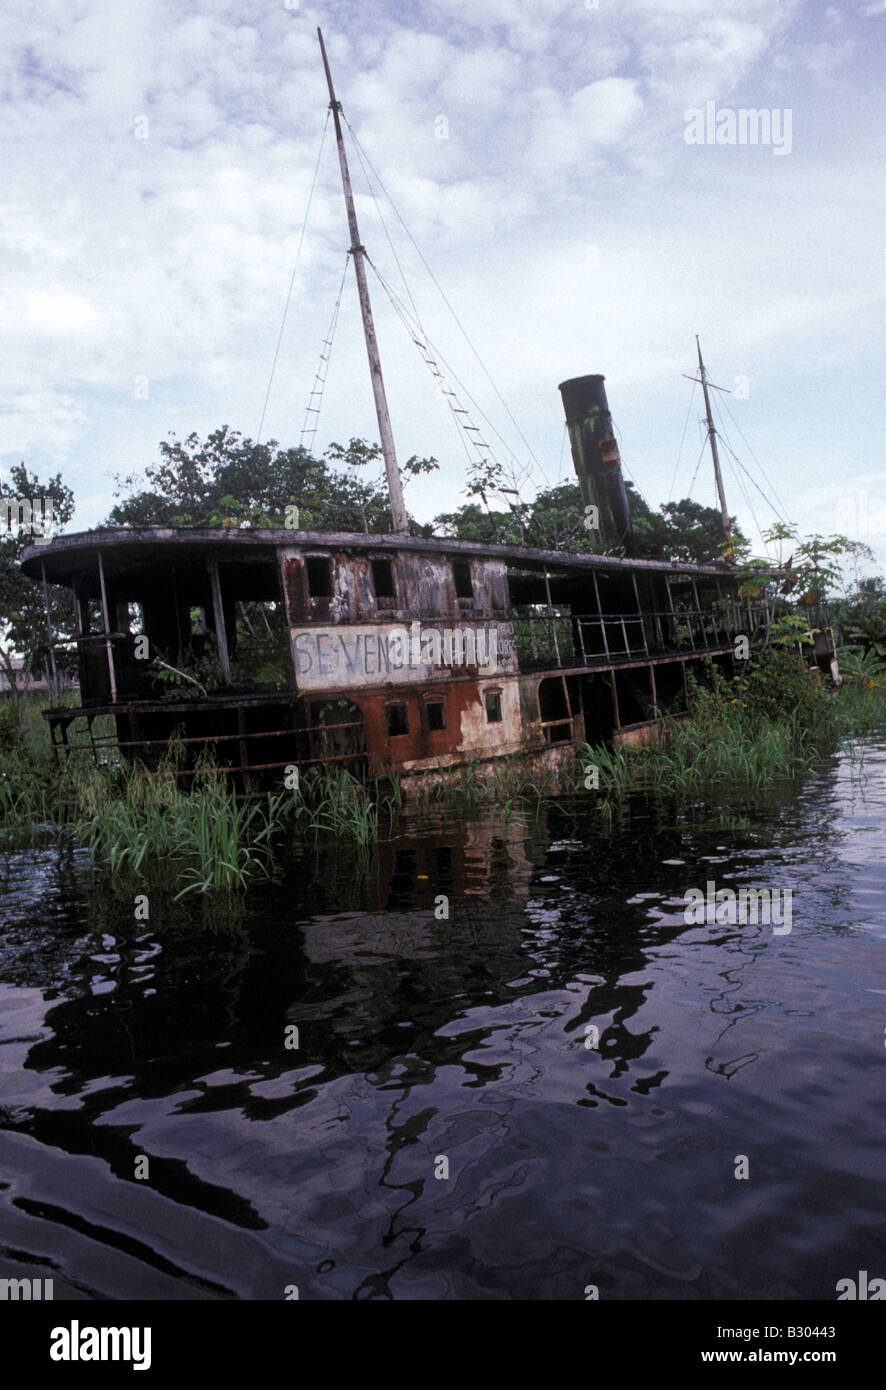 Alimentato a vapore amazzonico riverboat utilizzato nella Werner Herzog film epico Fitzcarraldo ora giace abbandonata in Iquitos Peru Foto Stock